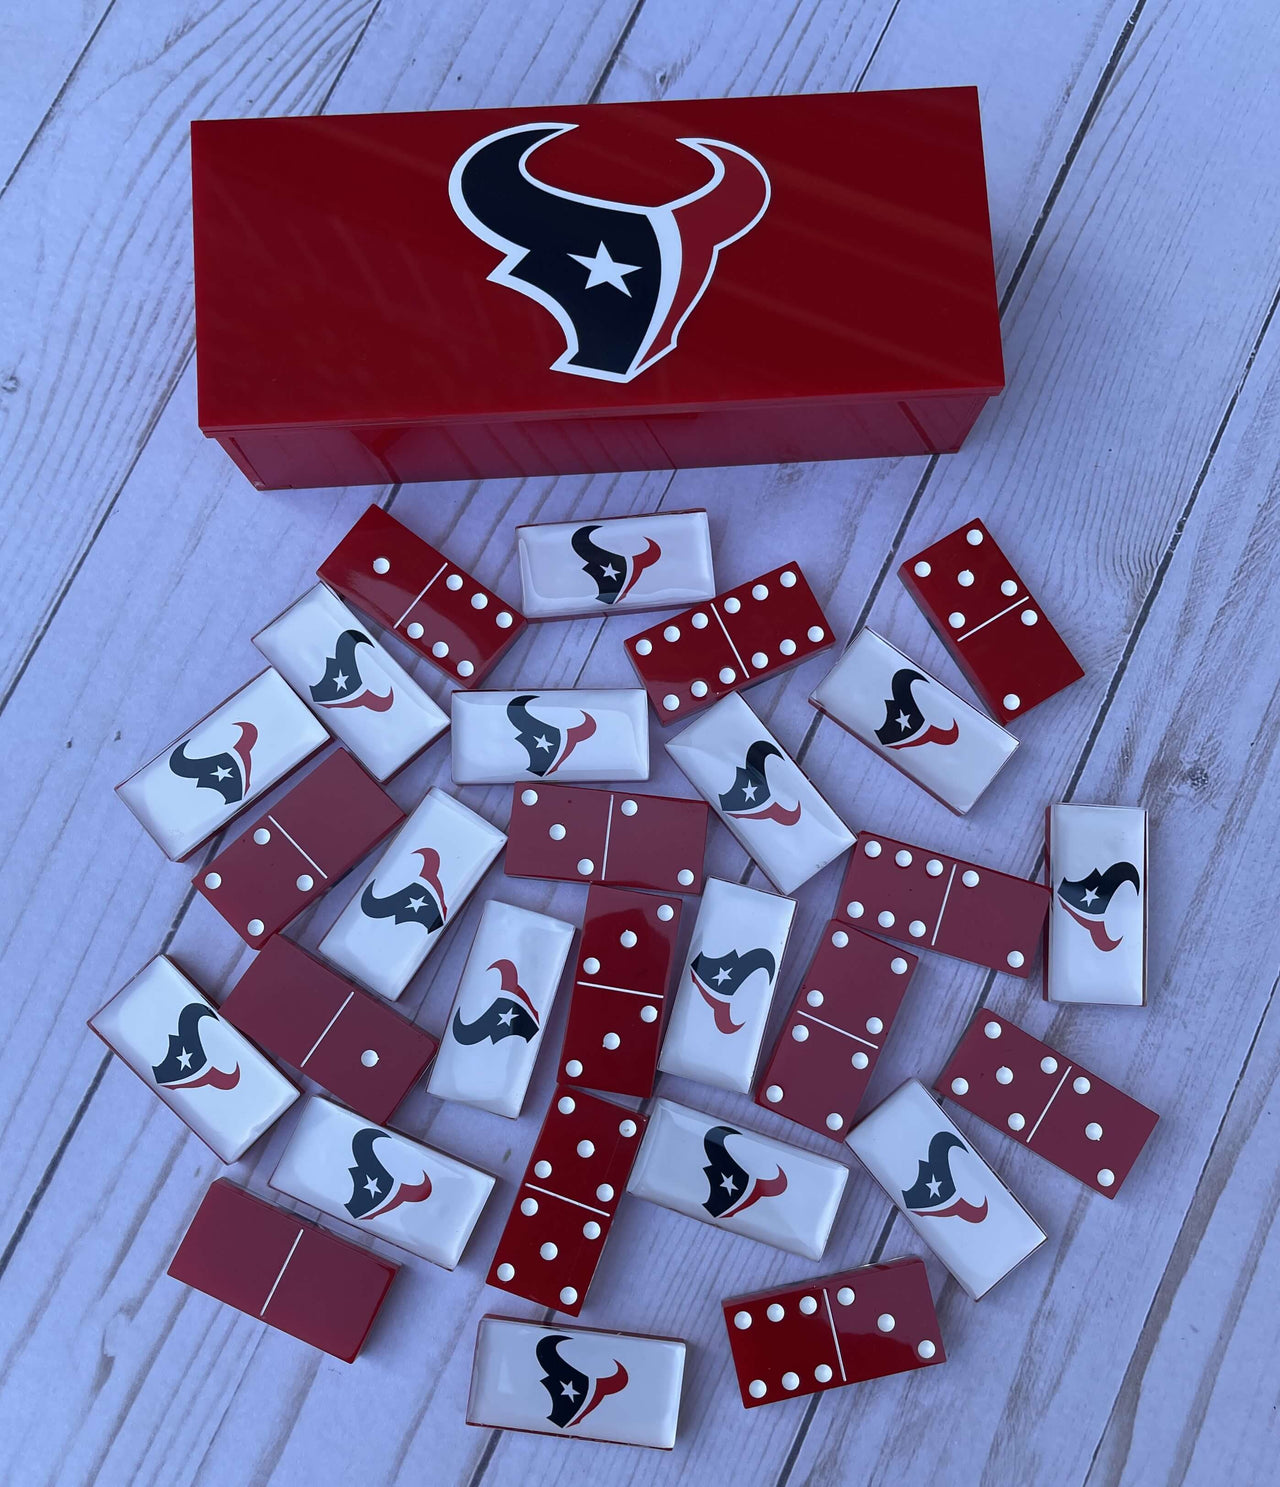 Houston Texans Dominoes Set American Football NFL Custom Resin Dominoes